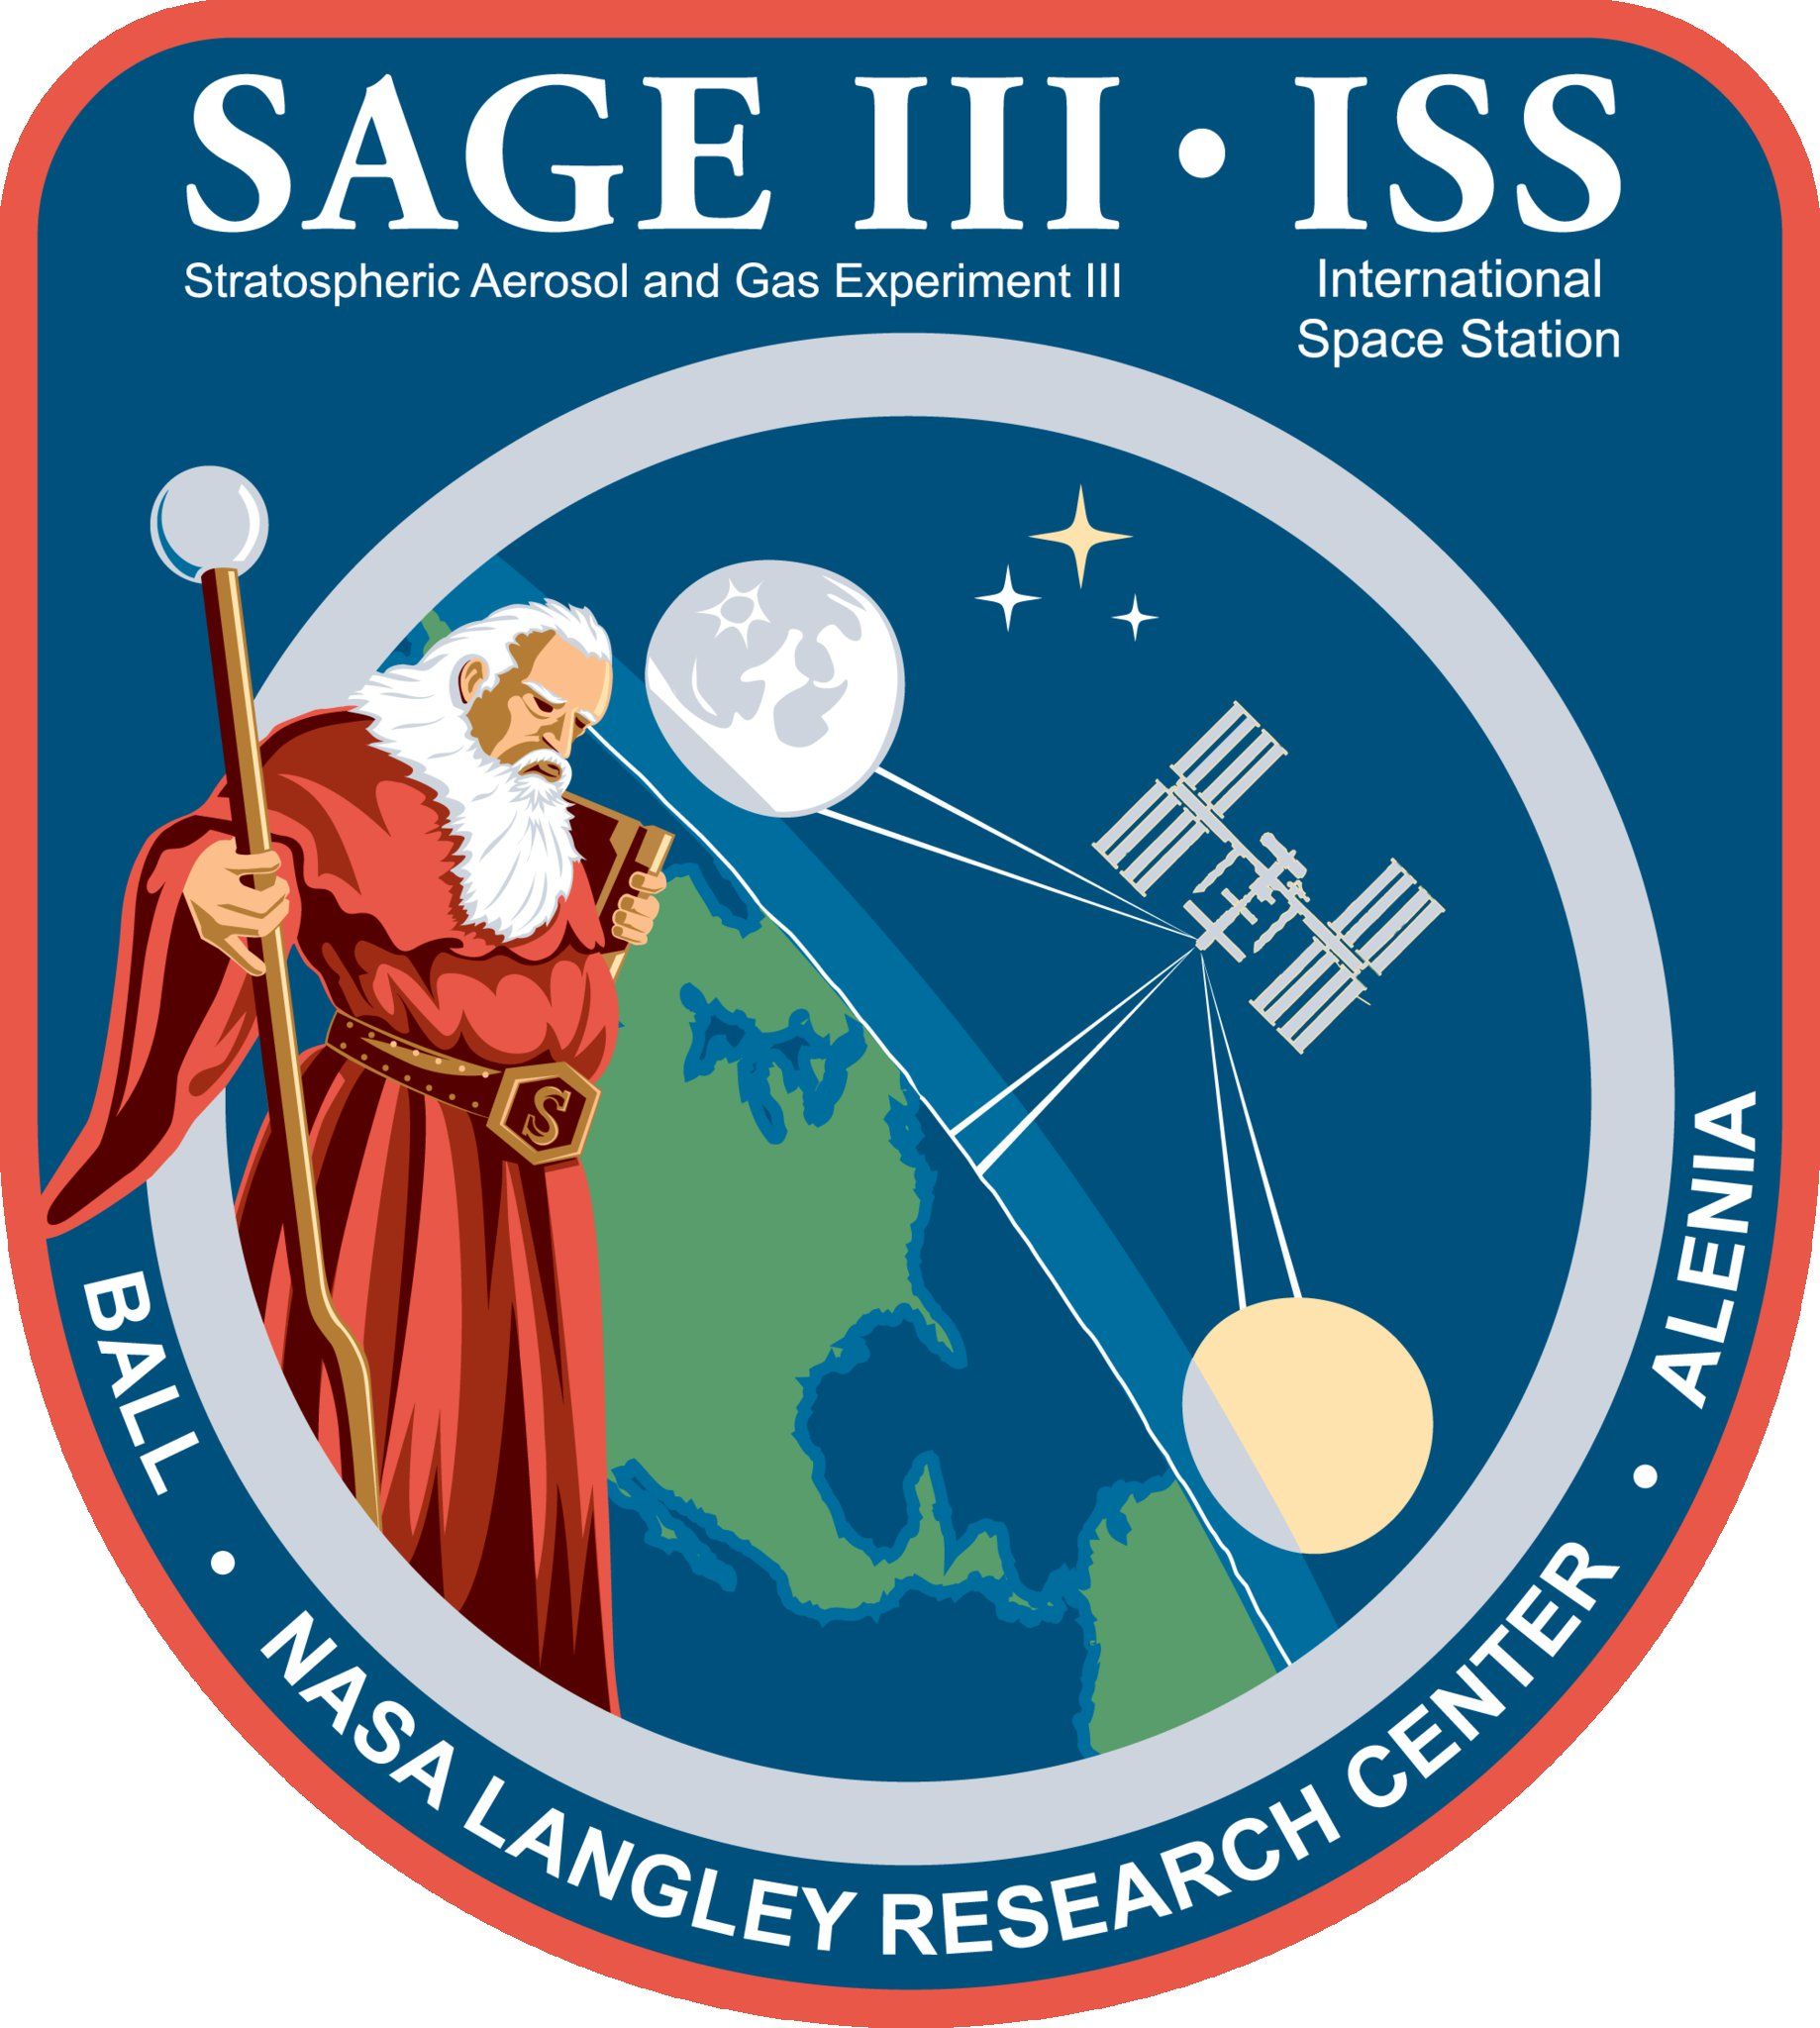 SAGE III mission logo